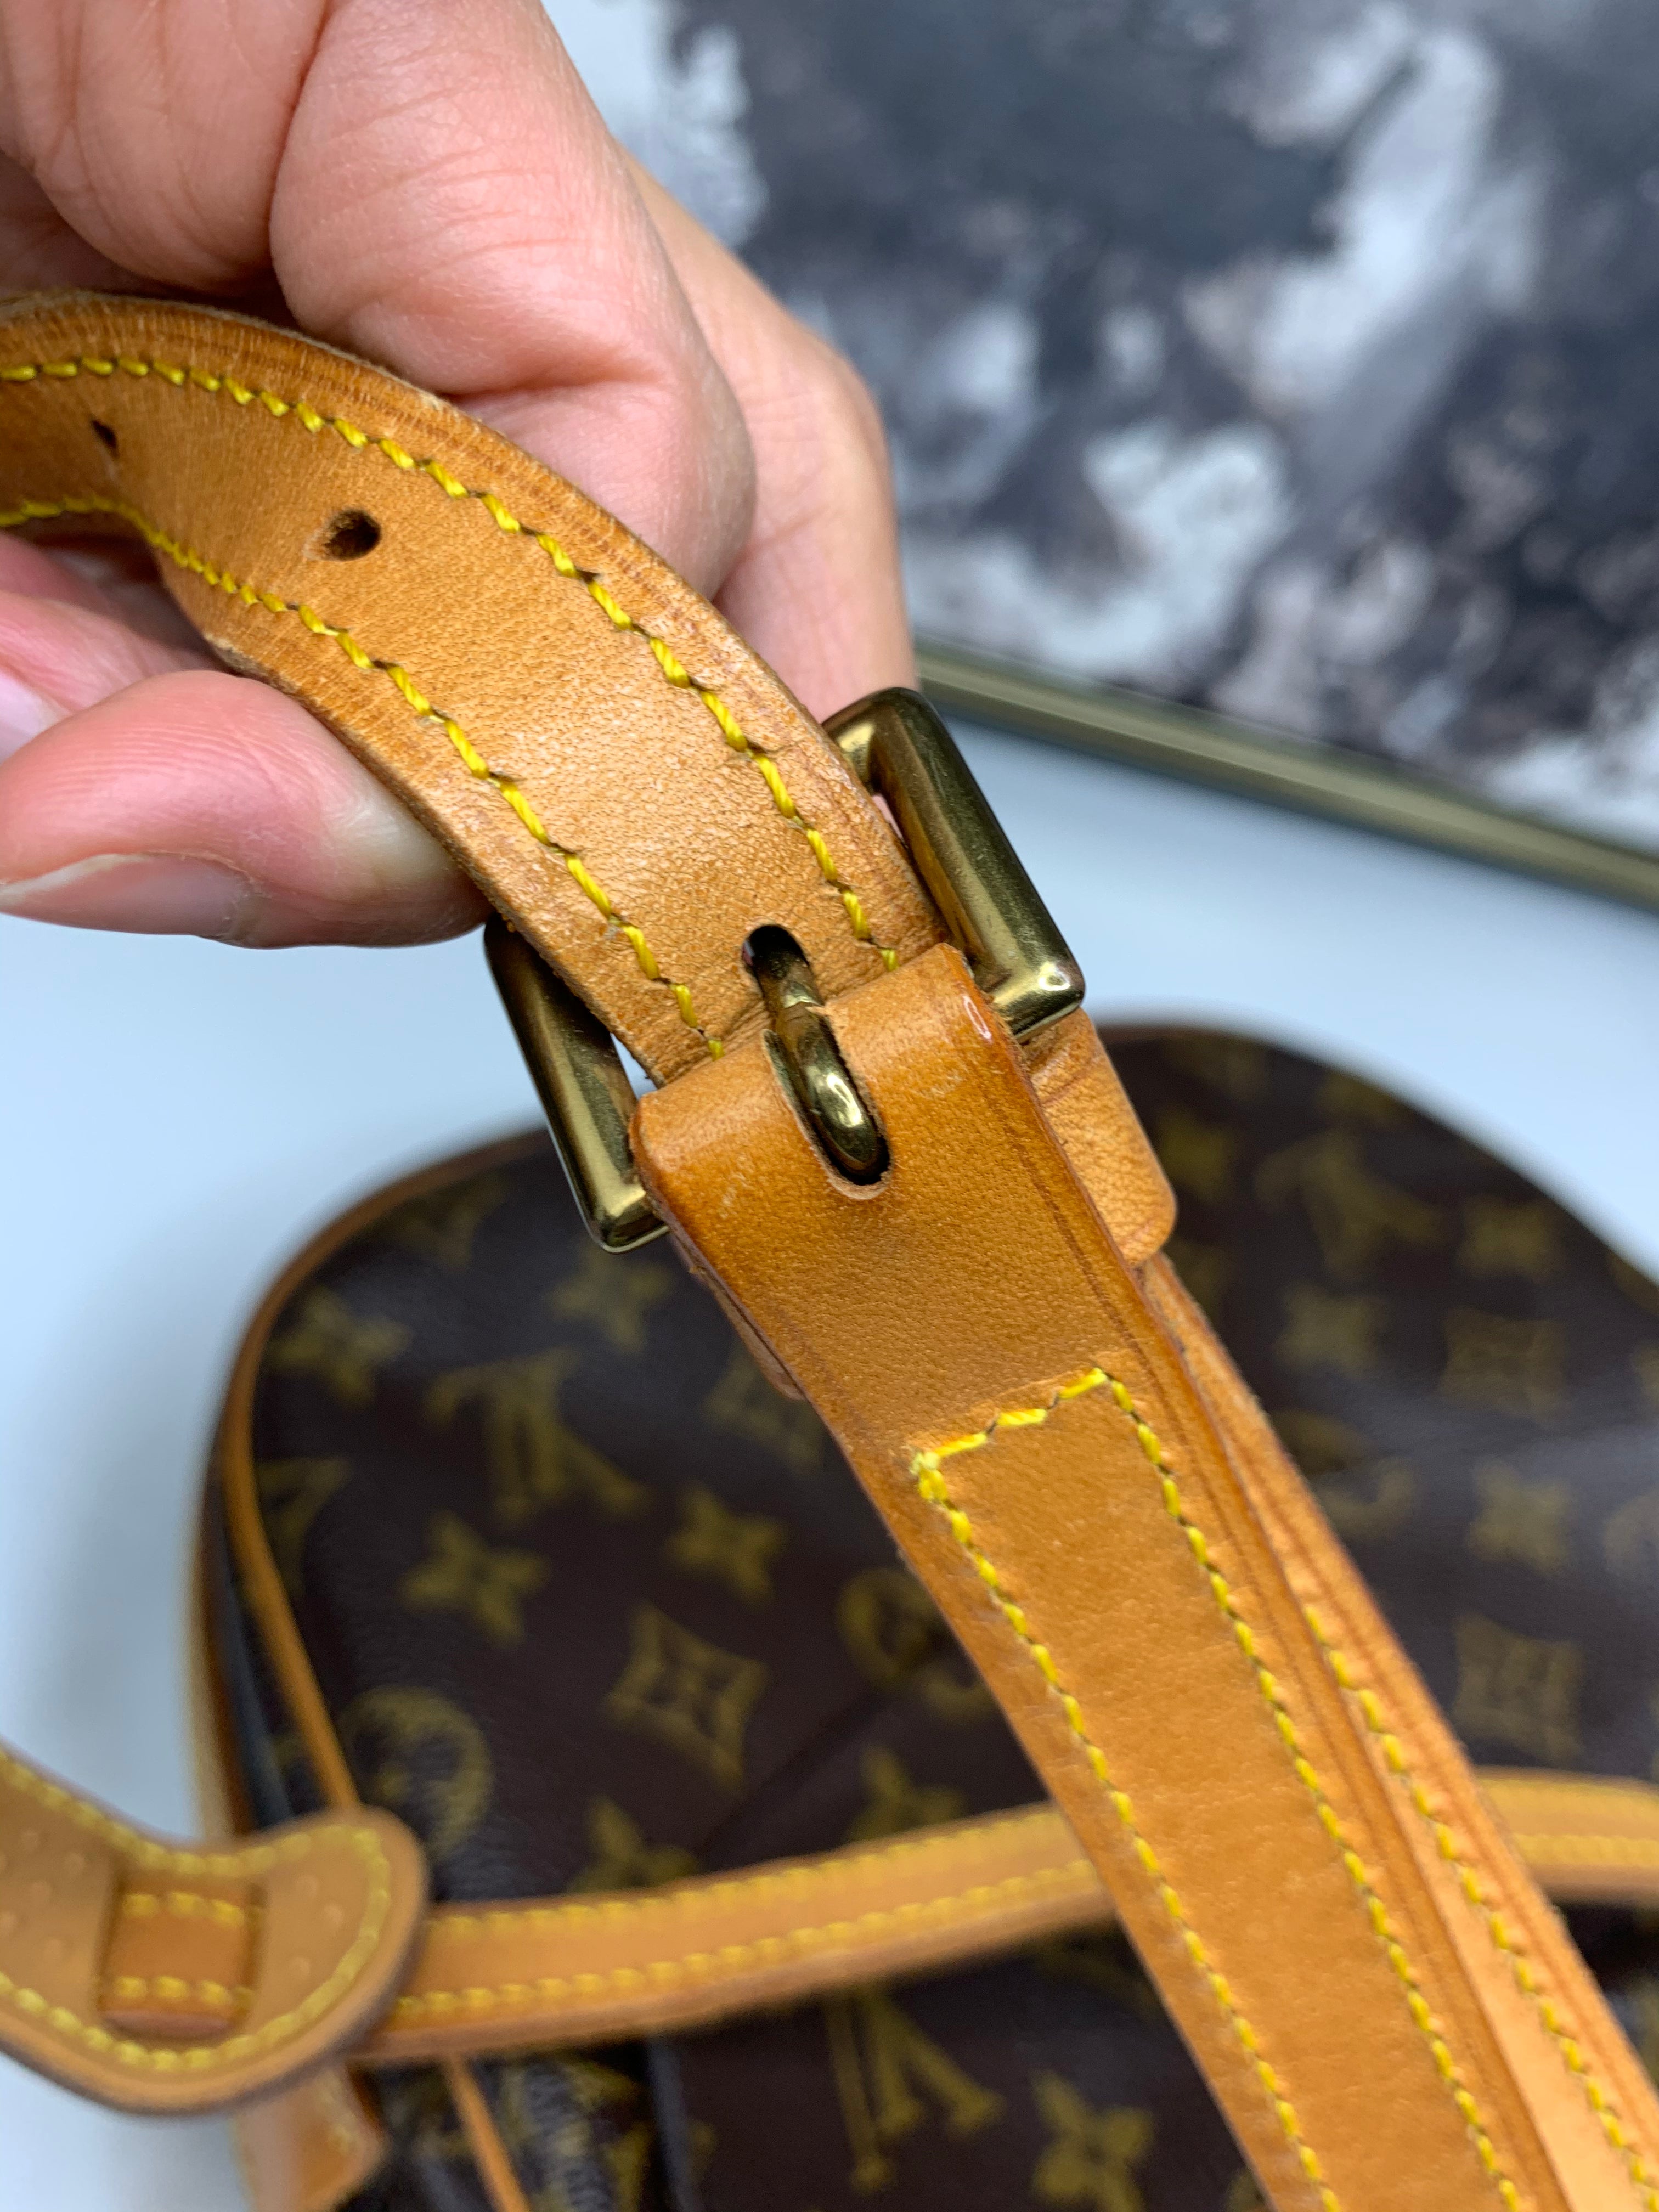 Louis Vuitton, Bags, Authentic Louis Vuitton Jeune Fille Mm Crossbody